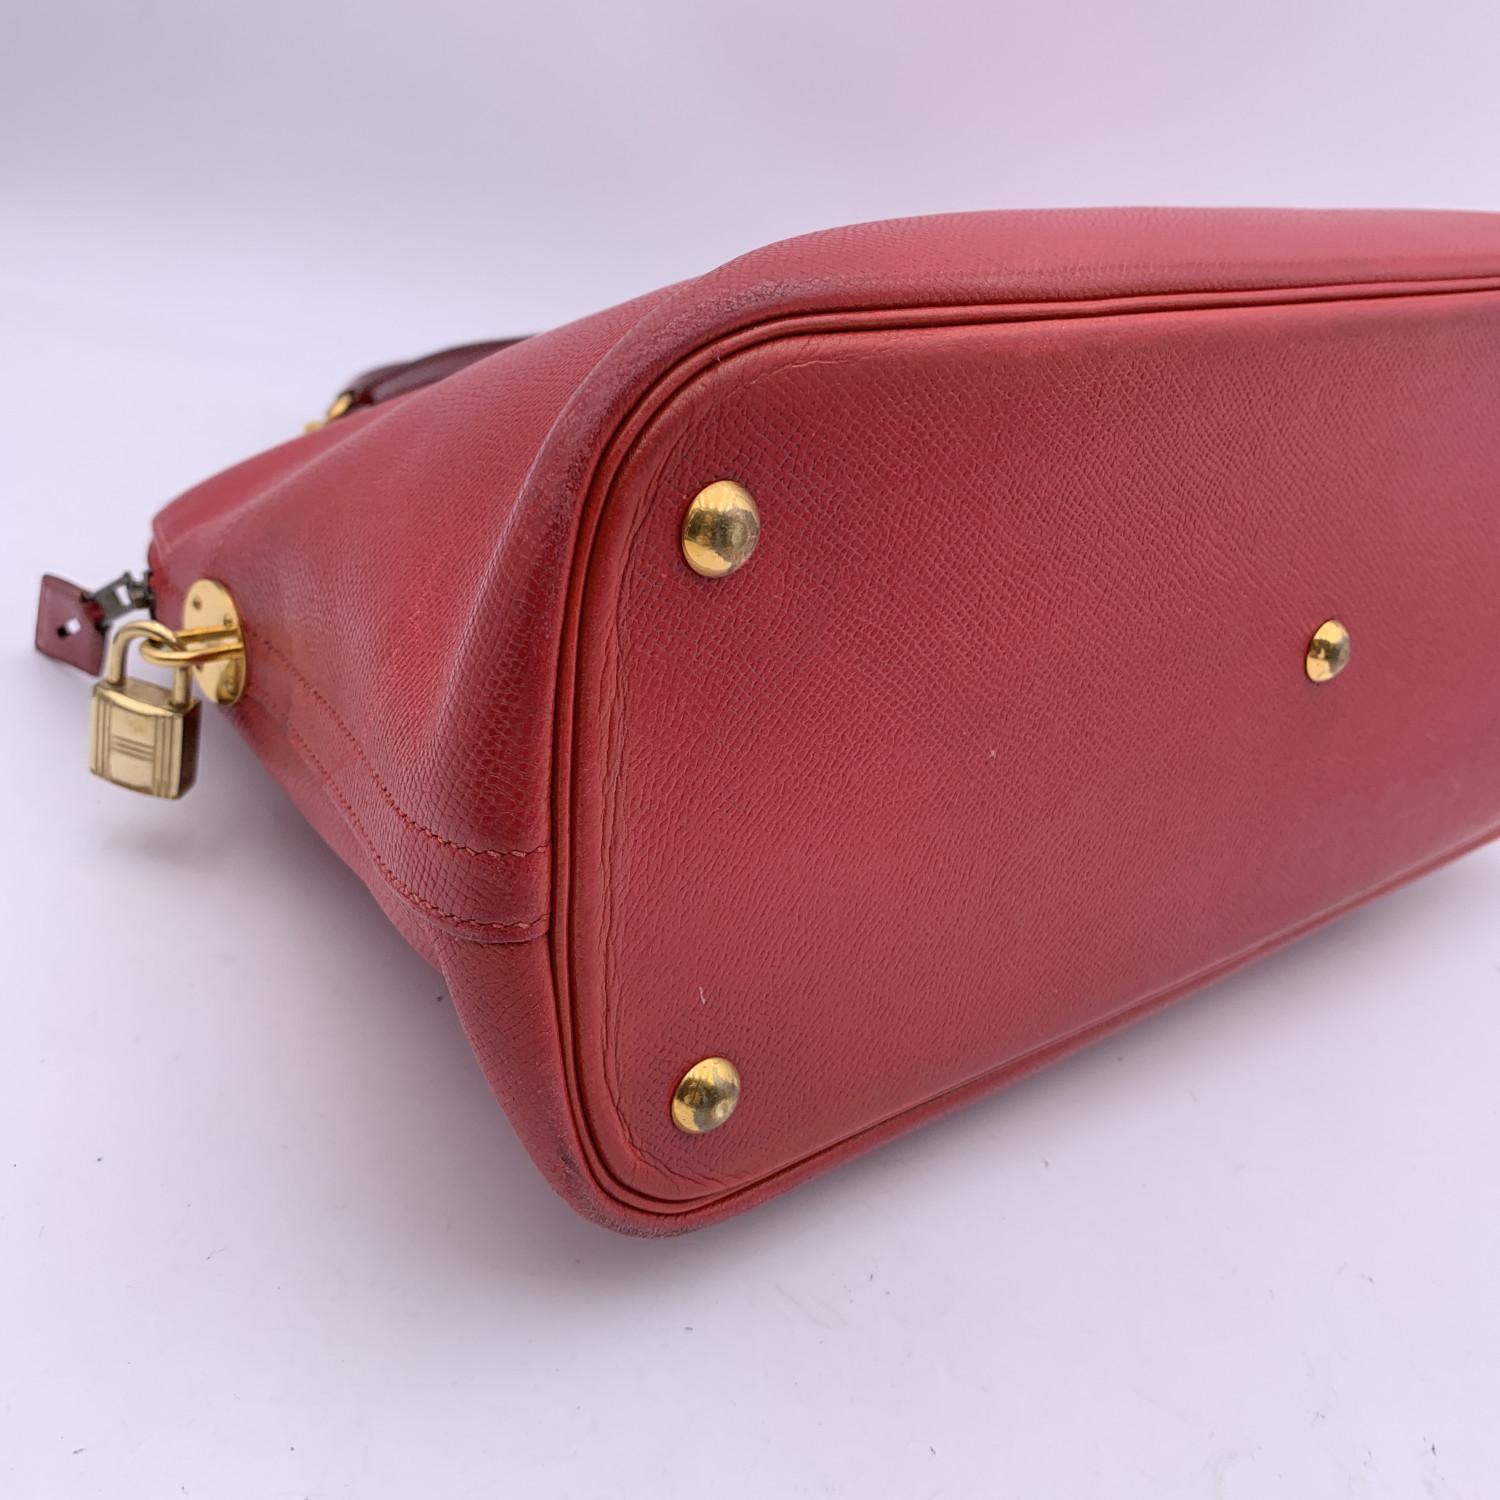 Hermes Vintage 1992 Red Leather Bolide 35 Satchel Bag with Strap 4